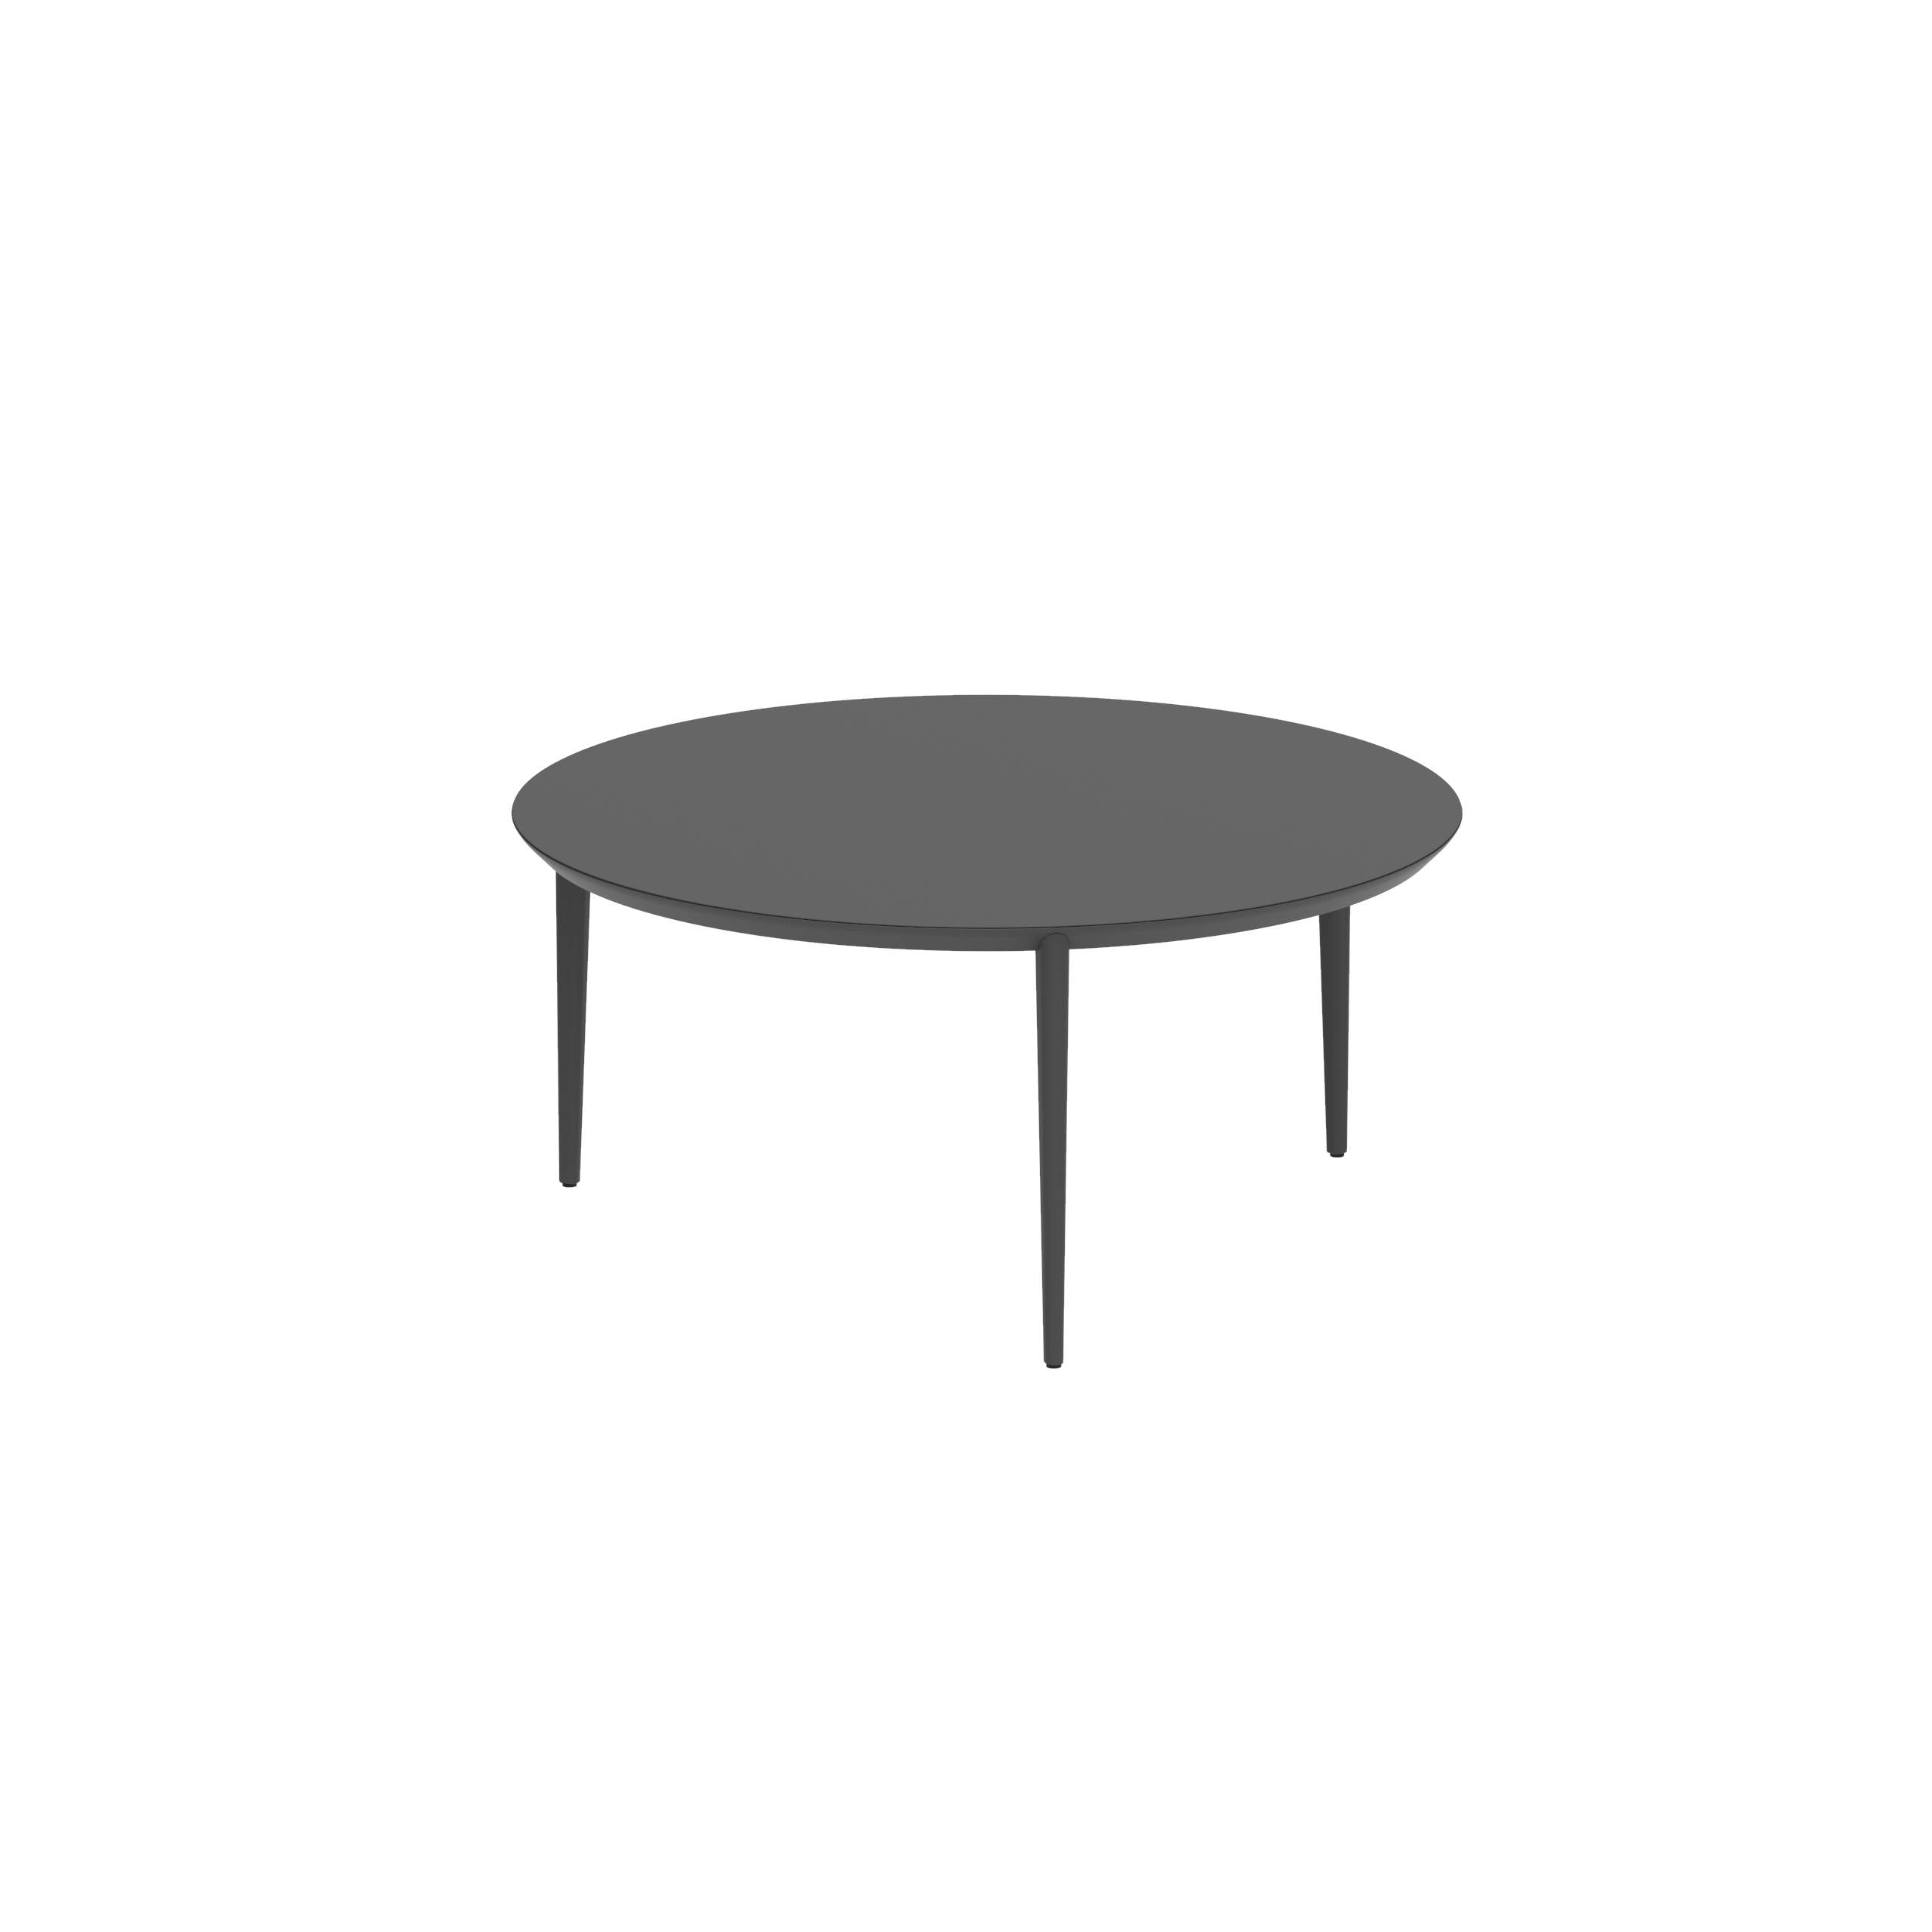 U-Nite Table Round Ø 160cm Alu Legs Anthracite - Table Top Ceramic Black